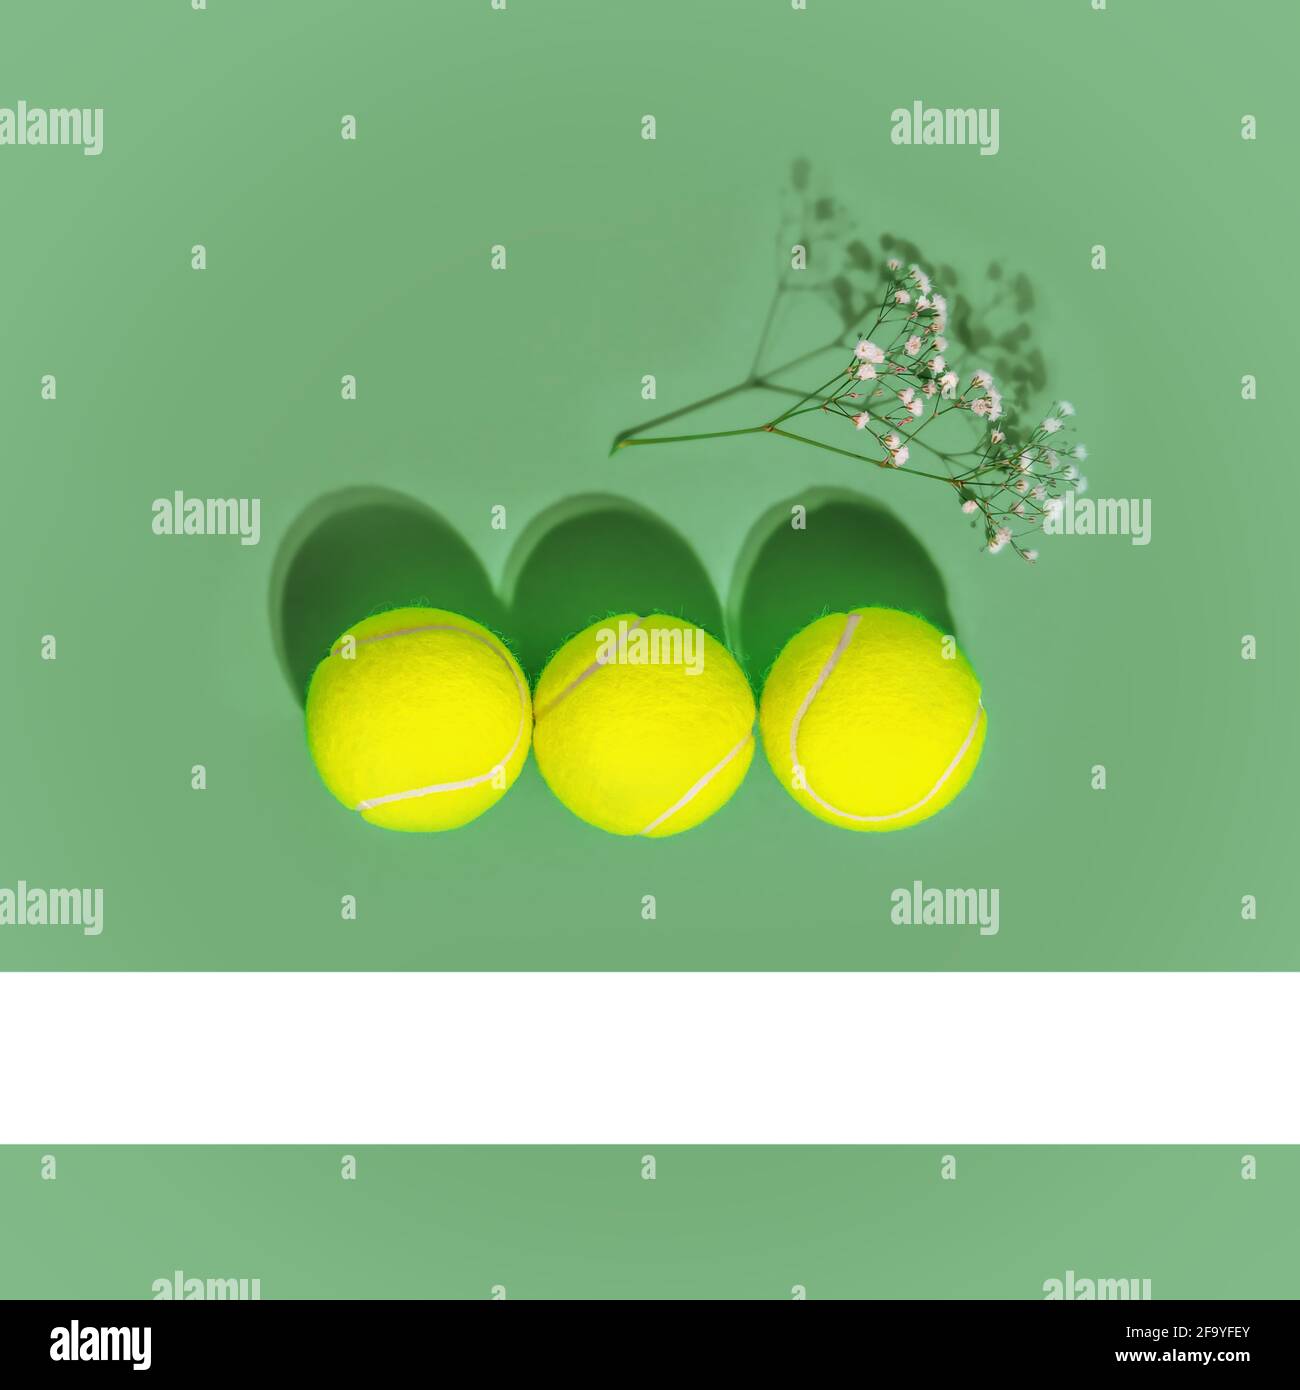 Le sport et un mode de vie sain. Tennis. Composition sportive de printemps avec trois balles de tennis jaunes et des fleurs sur fond vert du court de tennis. Le con Banque D'Images